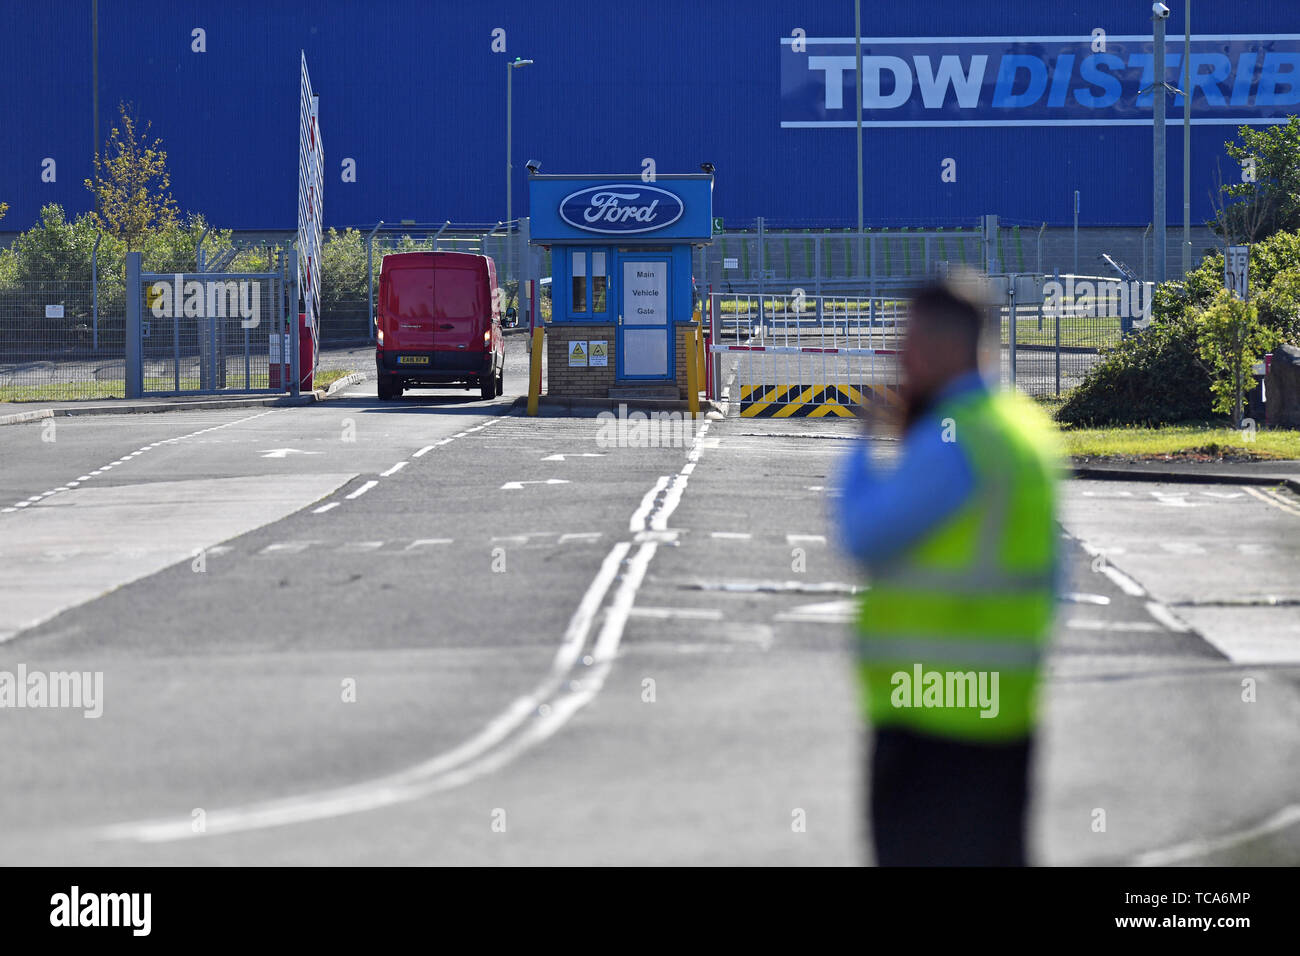 Der Ford Motor plant in der Nähe von Bridgend, South Wales, wo rund 1.500 Arbeitsplätze betroffen sind, wie die Gewerkschaften haben Schock bei einem erwarteten Ankündigung, dass die Auto Riese ist einer der britischen Fabriken mit schwere Arbeitsplatzverluste zu schließen. Stockfoto